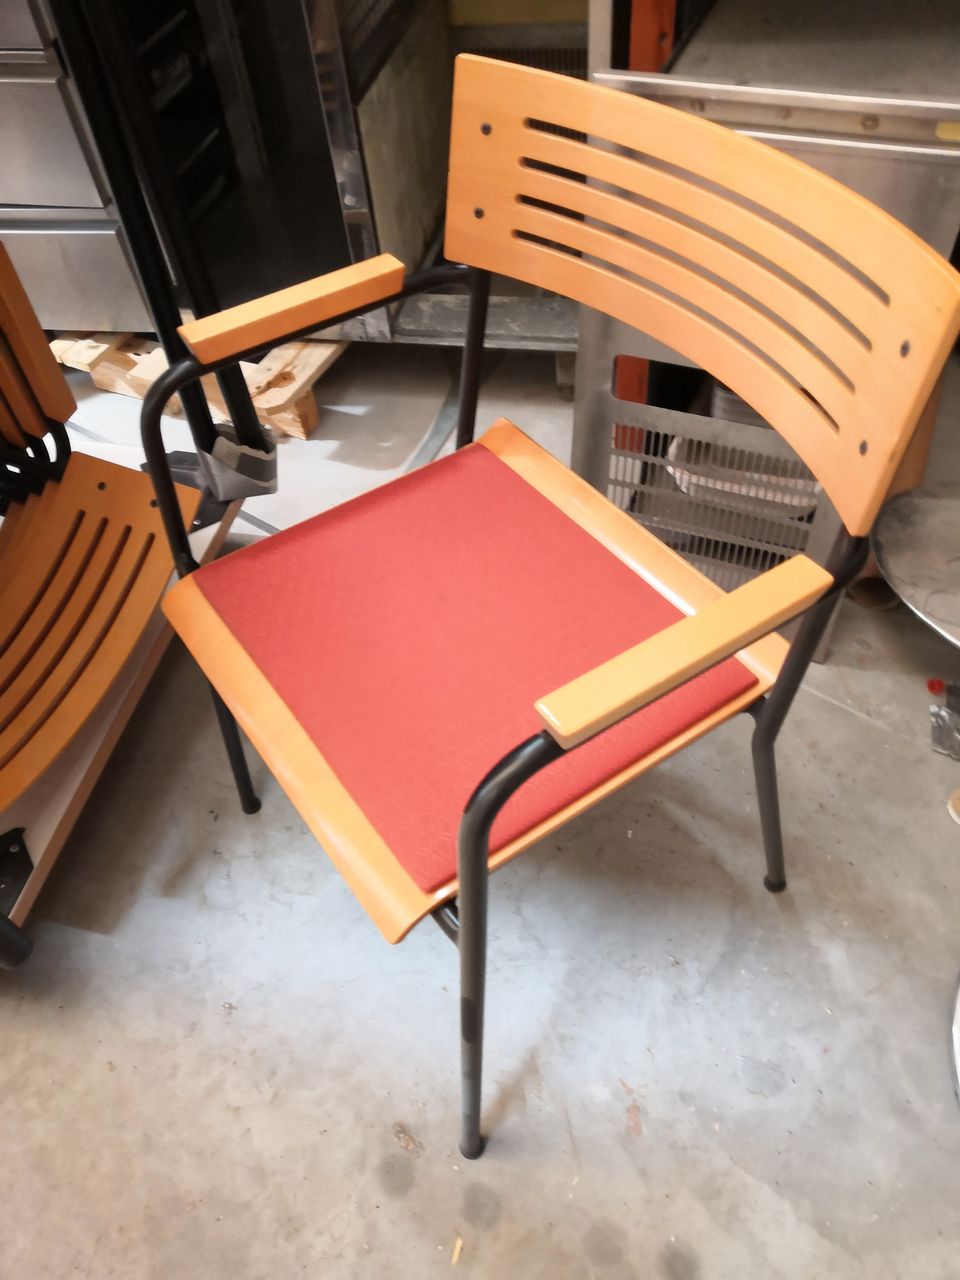 Kuvan mukaisia tuoleja ja pöytiä